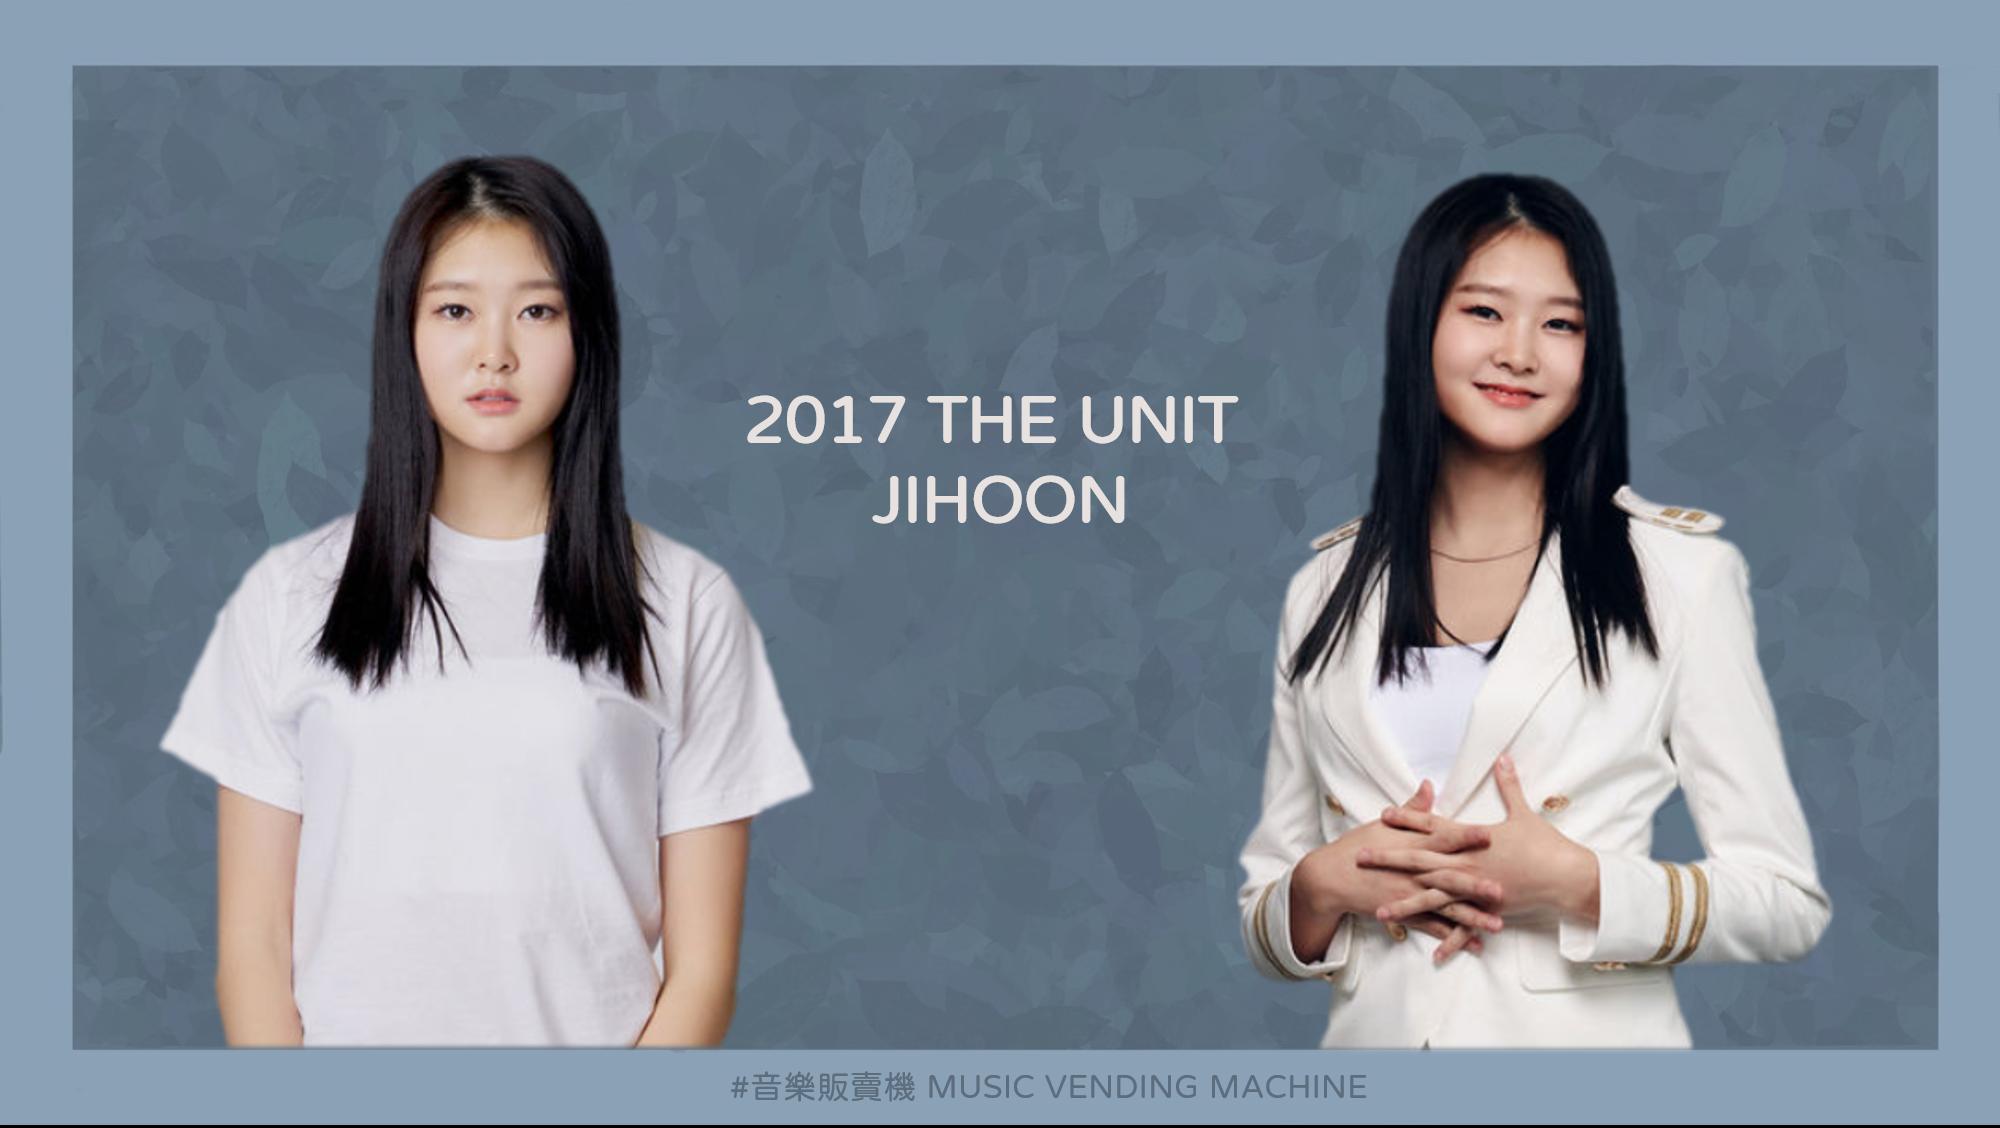 2017年參與KBS選秀節目《THE UNIT》官方宣傳照。(Design: 西恩)